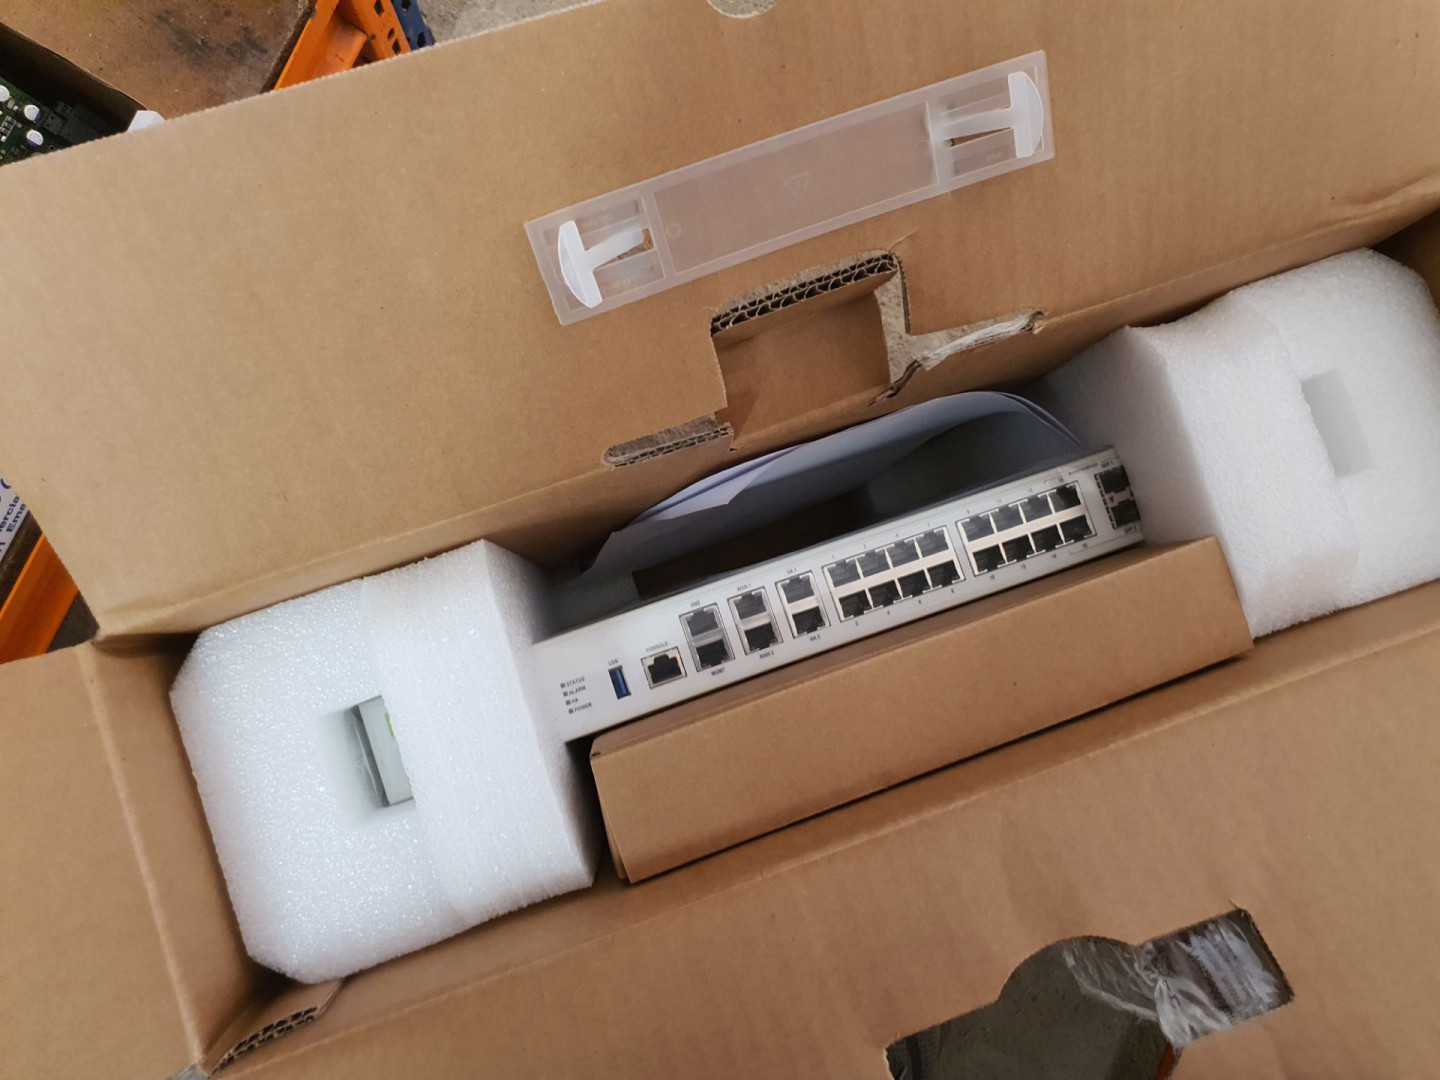 2x Fortigate-100E network routers (boxed & unused)